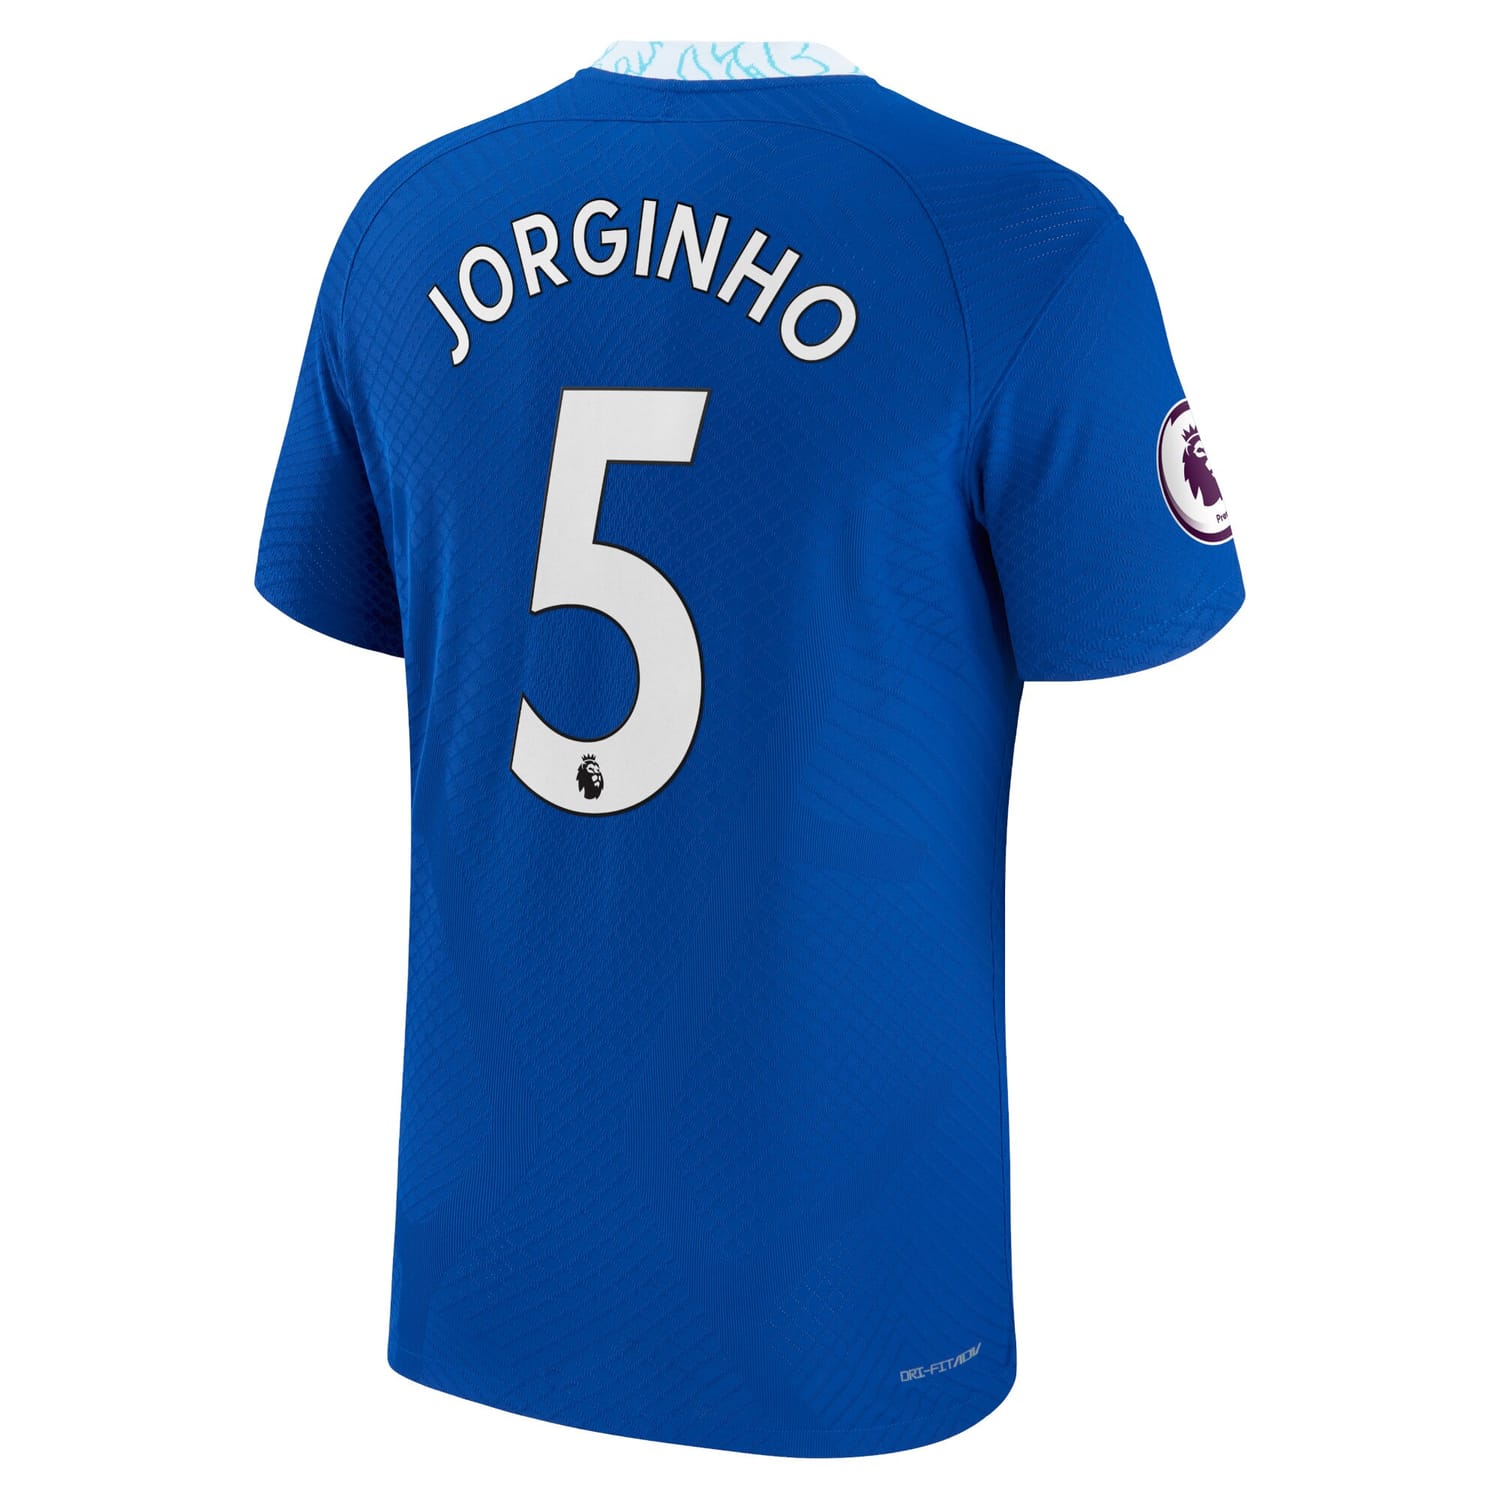 Premier League Chelsea Home Authentic Jersey Shirt Blue 2022-23 player Jorginho printing for Men